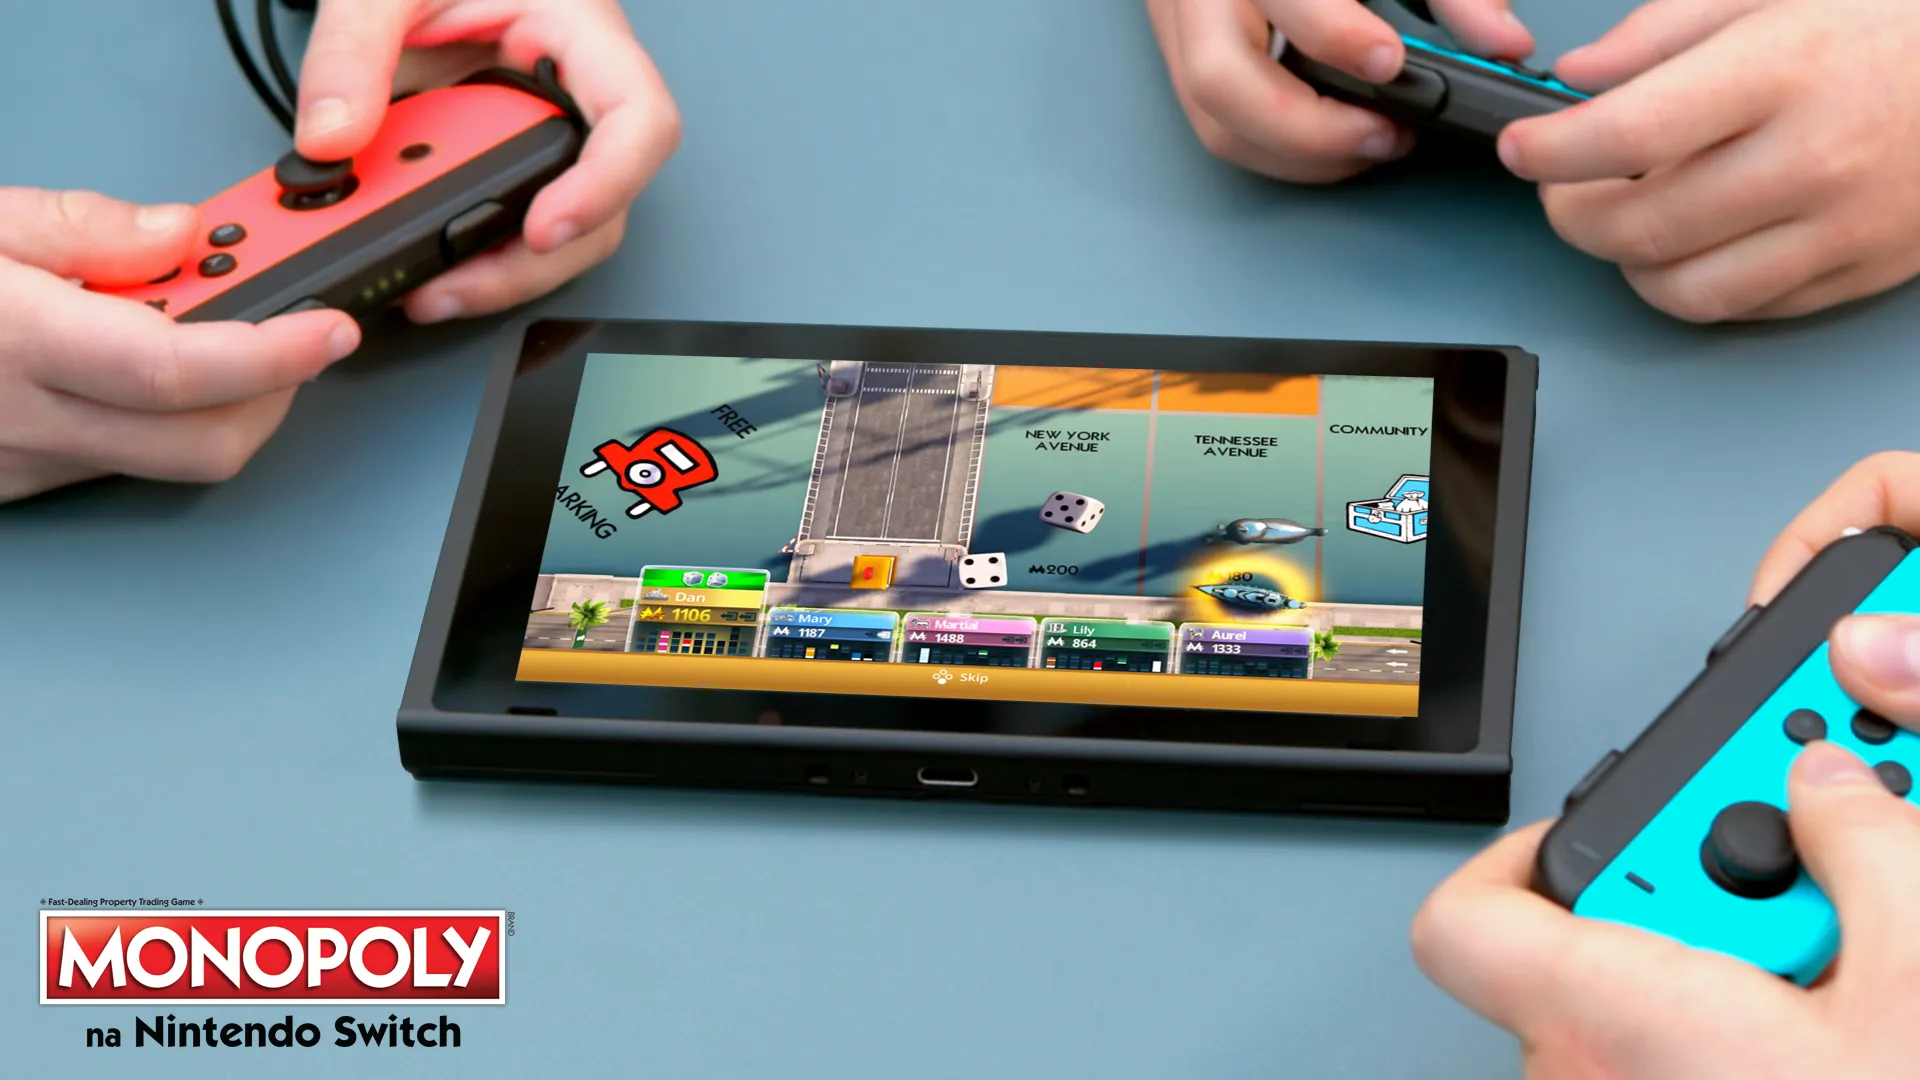 Monopoly na Nintendo Switch już dostępne!